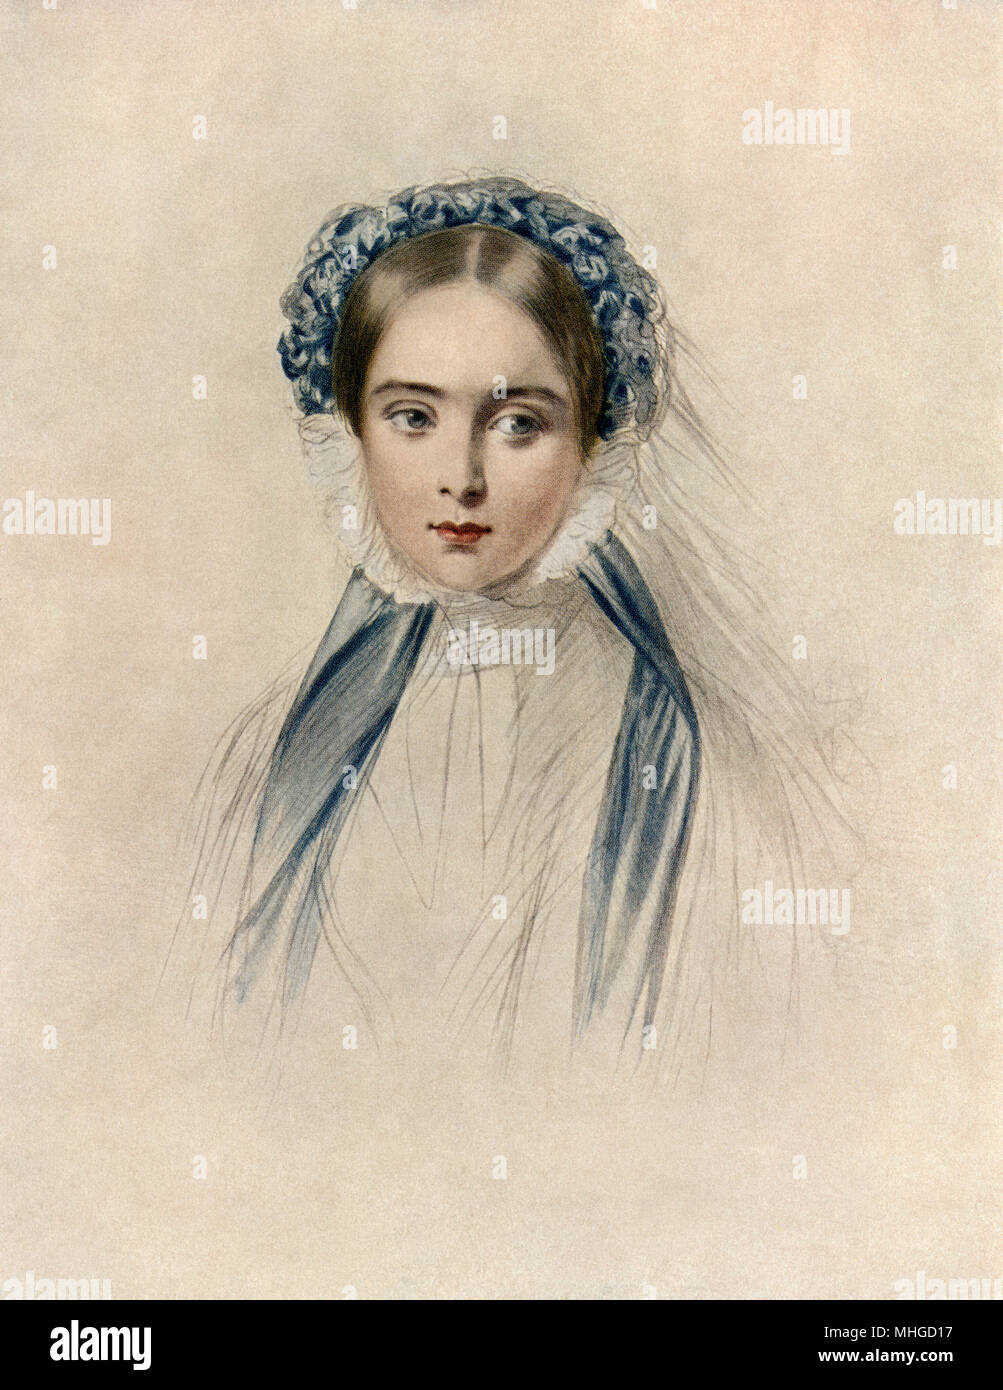 La regina Victoria presto nel suo regno. Stampate la riproduzione a colori di un disegno contemporaneo Foto Stock